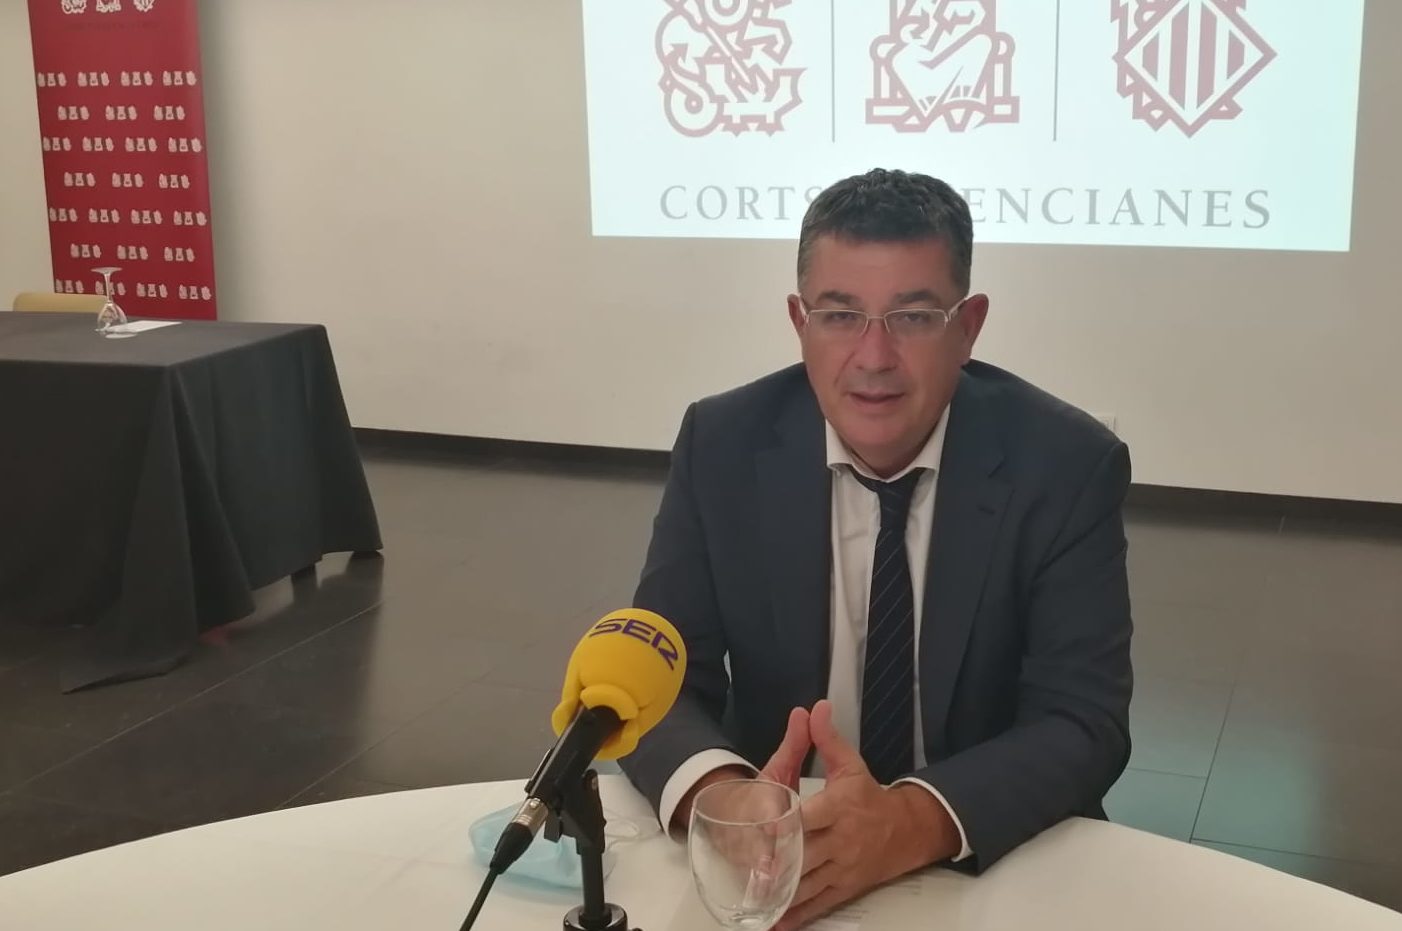 Imagen del president de les Corts Valencianes sentado con una ppantalal de proyección con el logotipo de los Corts tres él